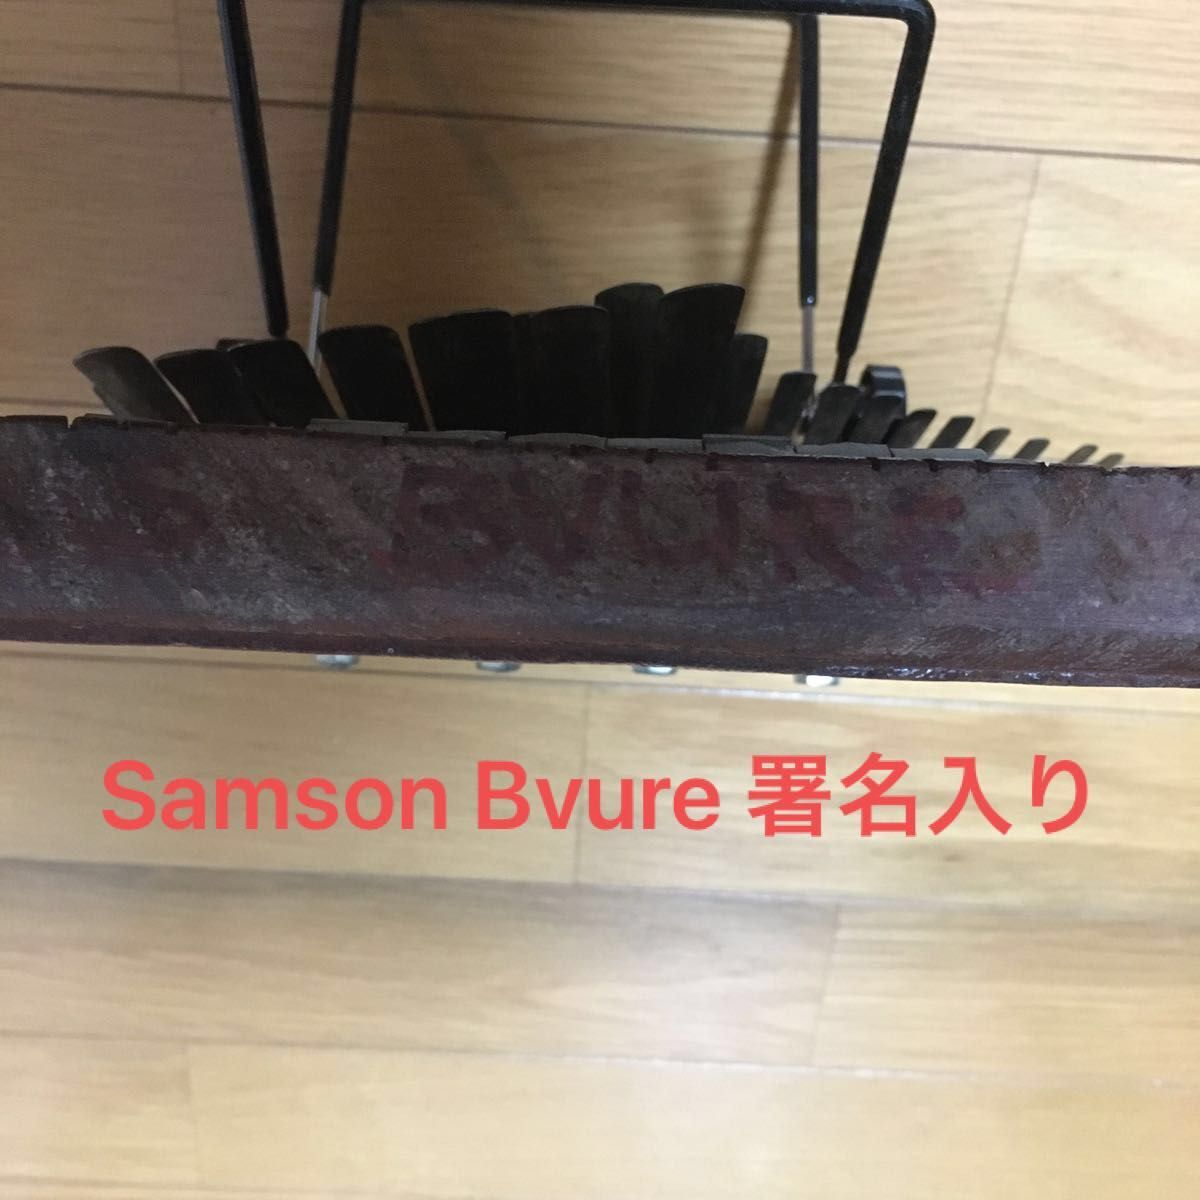 【即出荷 S.Bvure製作!!】MBIRA ムビラ/ サムソン ブレ ケース付 民族楽器